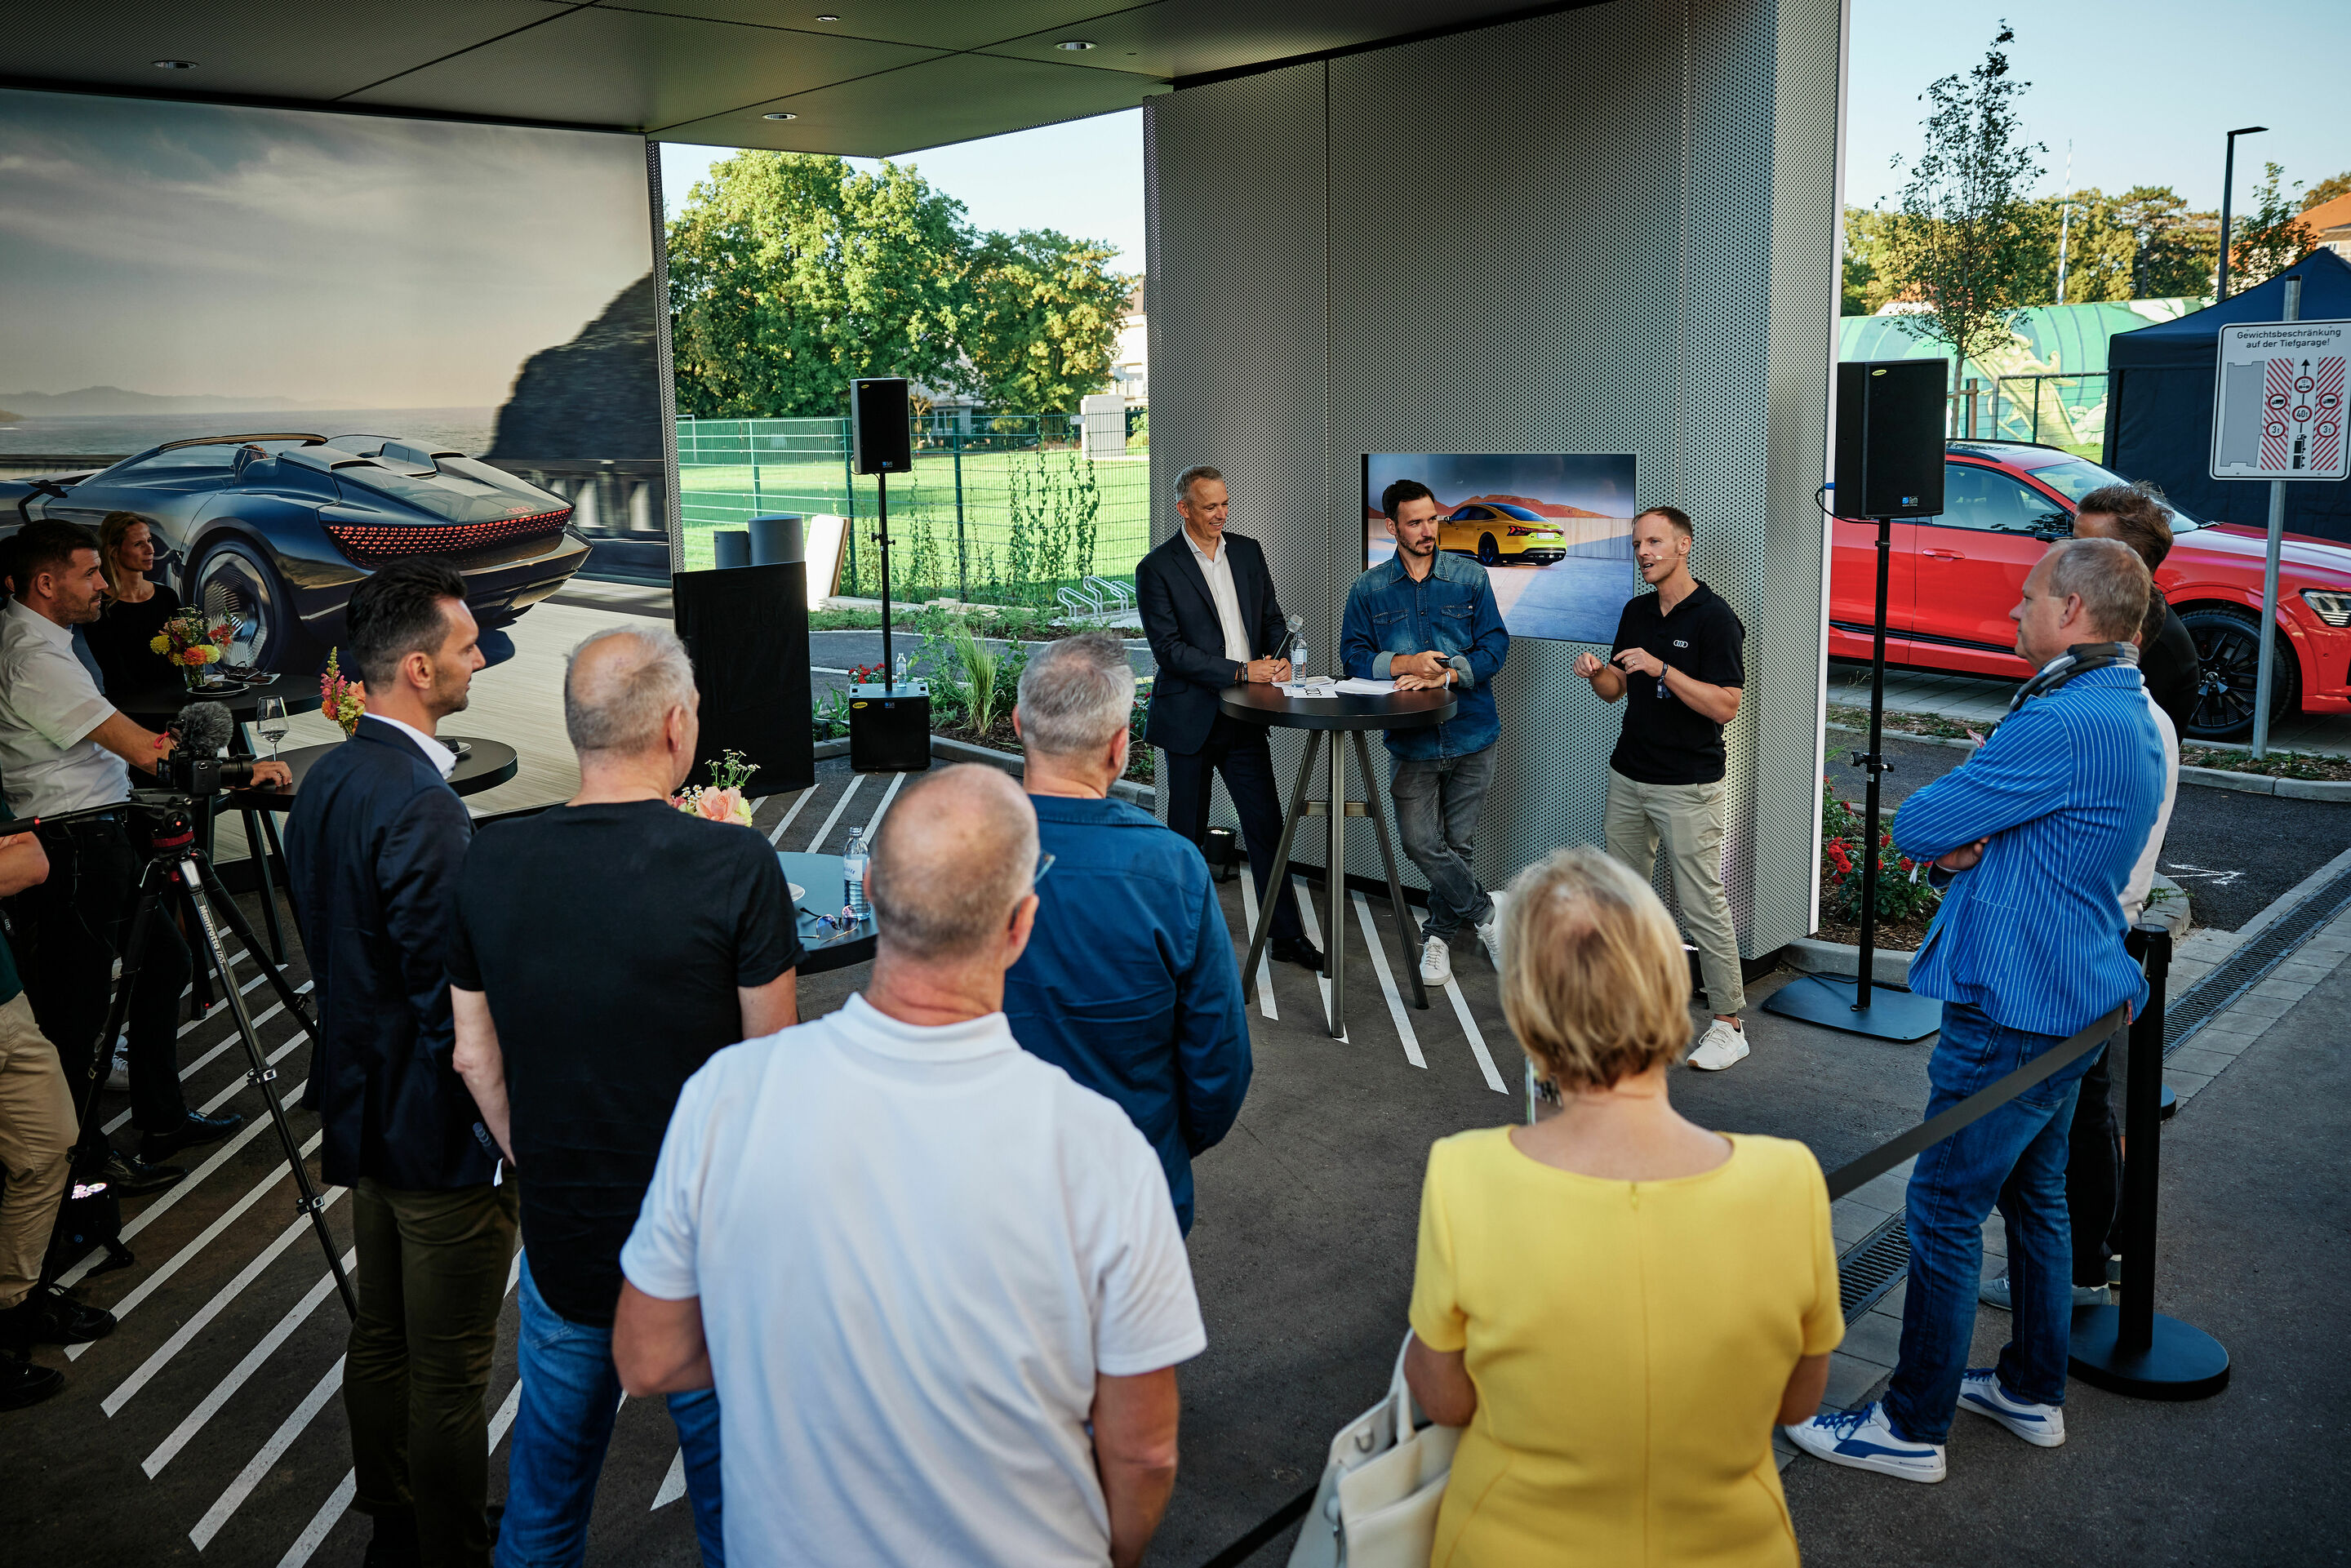 New Audi charging hub opens in Munich